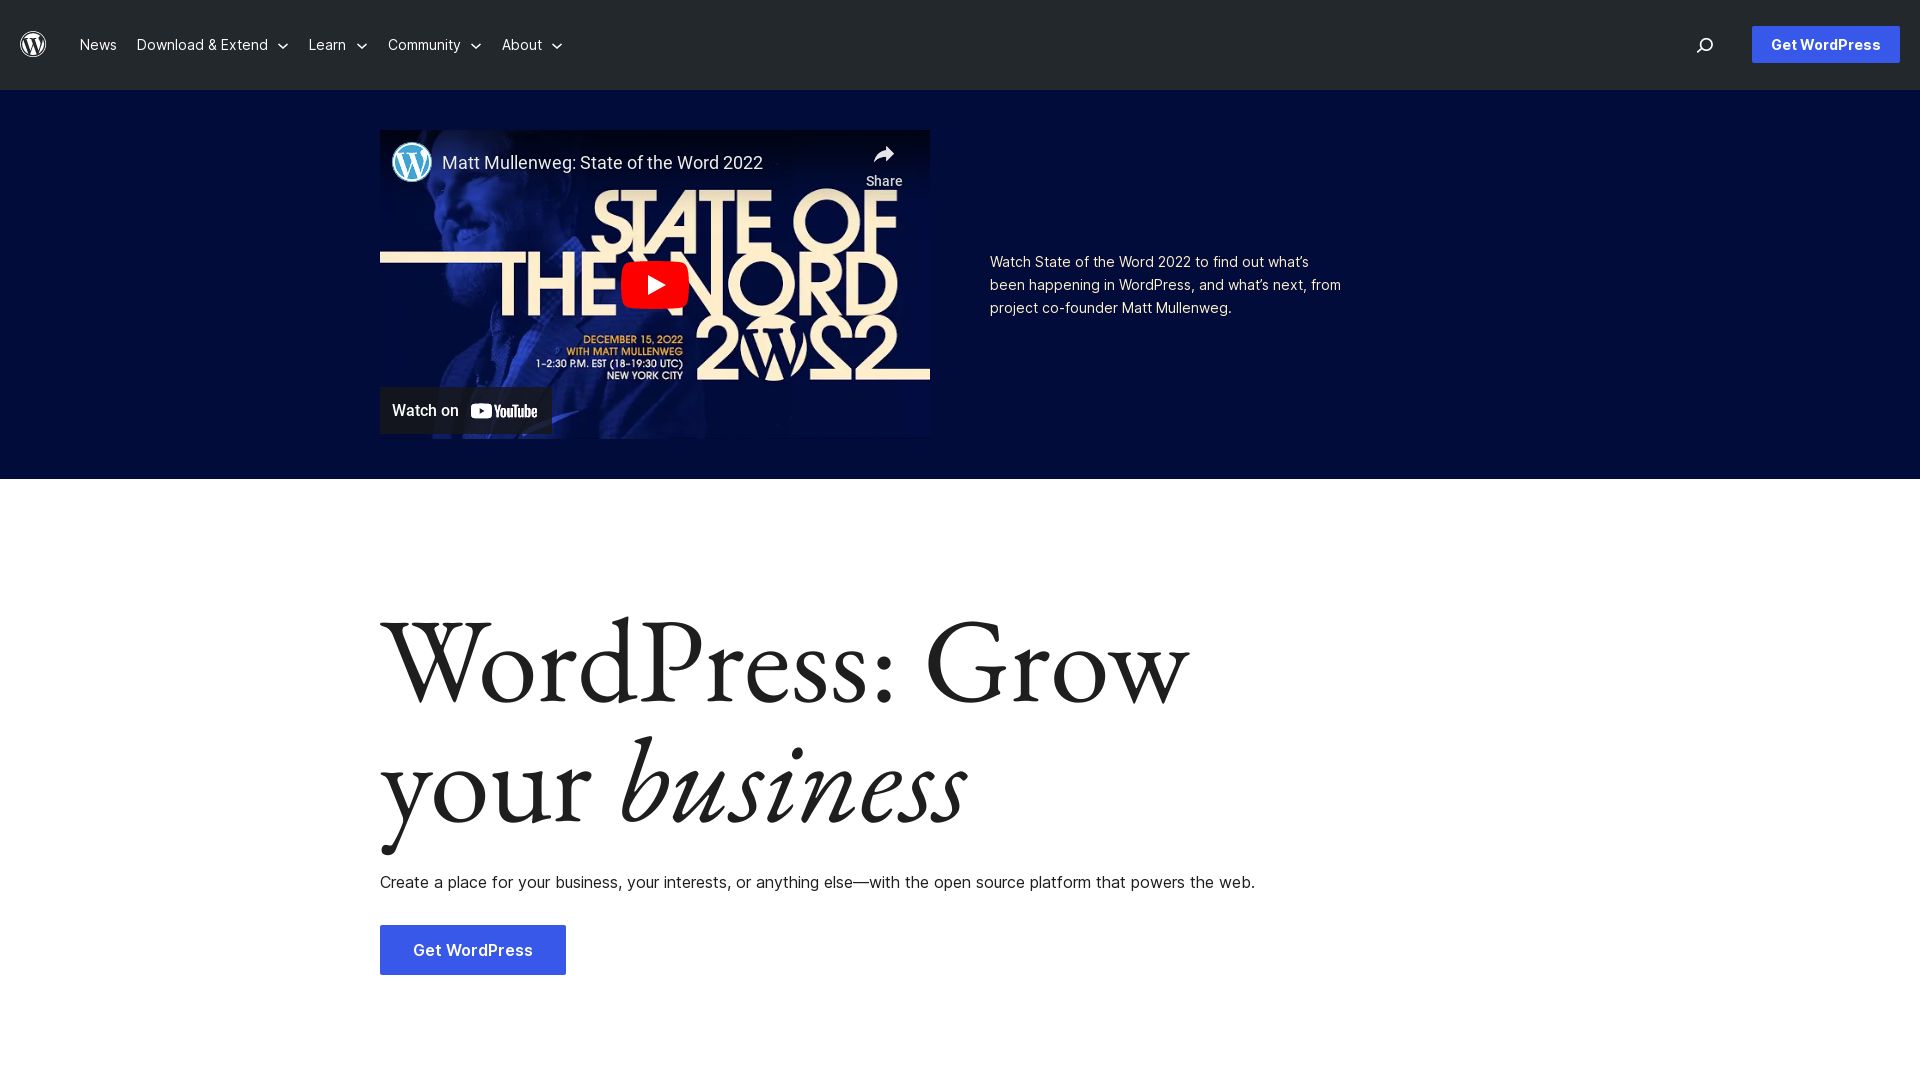 Website status wordpress.org is   ONLINE